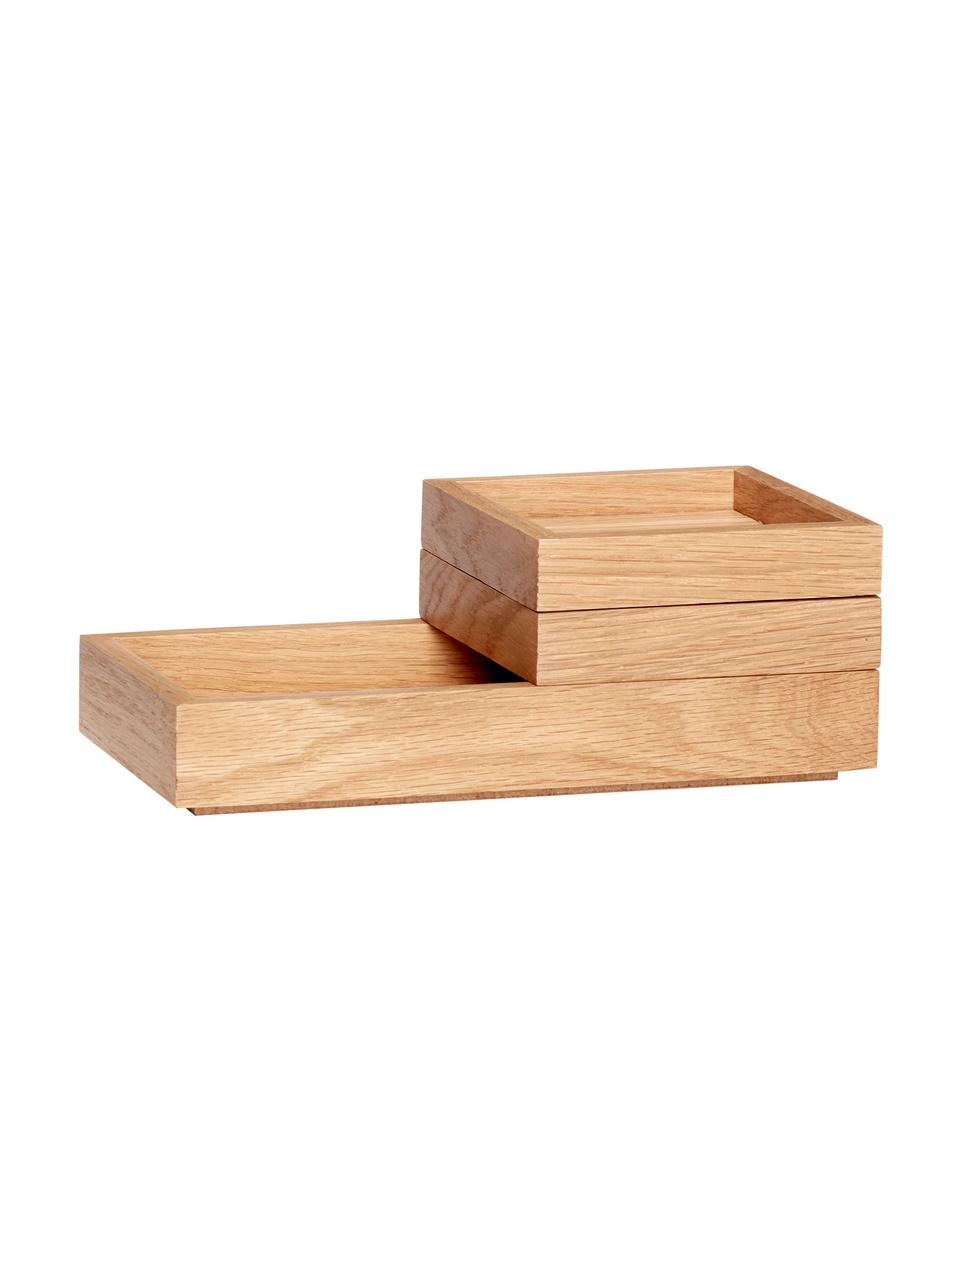 Set de cajas apilables Klara, 3 uds., Chapa de roble, madera de roble con certificado FSC, Madera clara, Set de diferentes tamaños